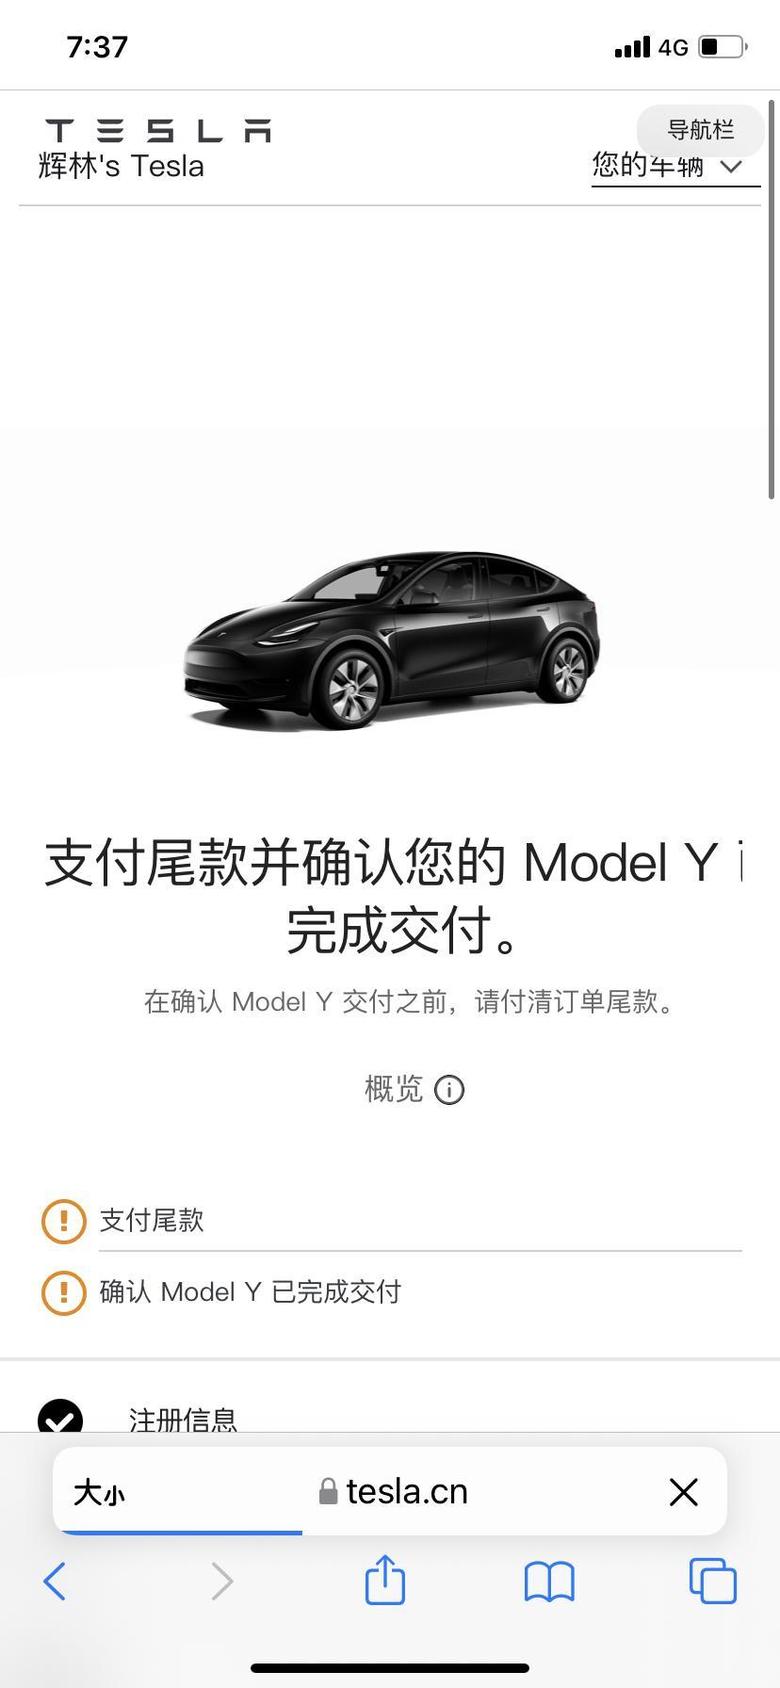 model y 8.10日下单，十月初销售建议改20月初提车，穷只能等，今日by,坐标大城市惠州，订单号1877。